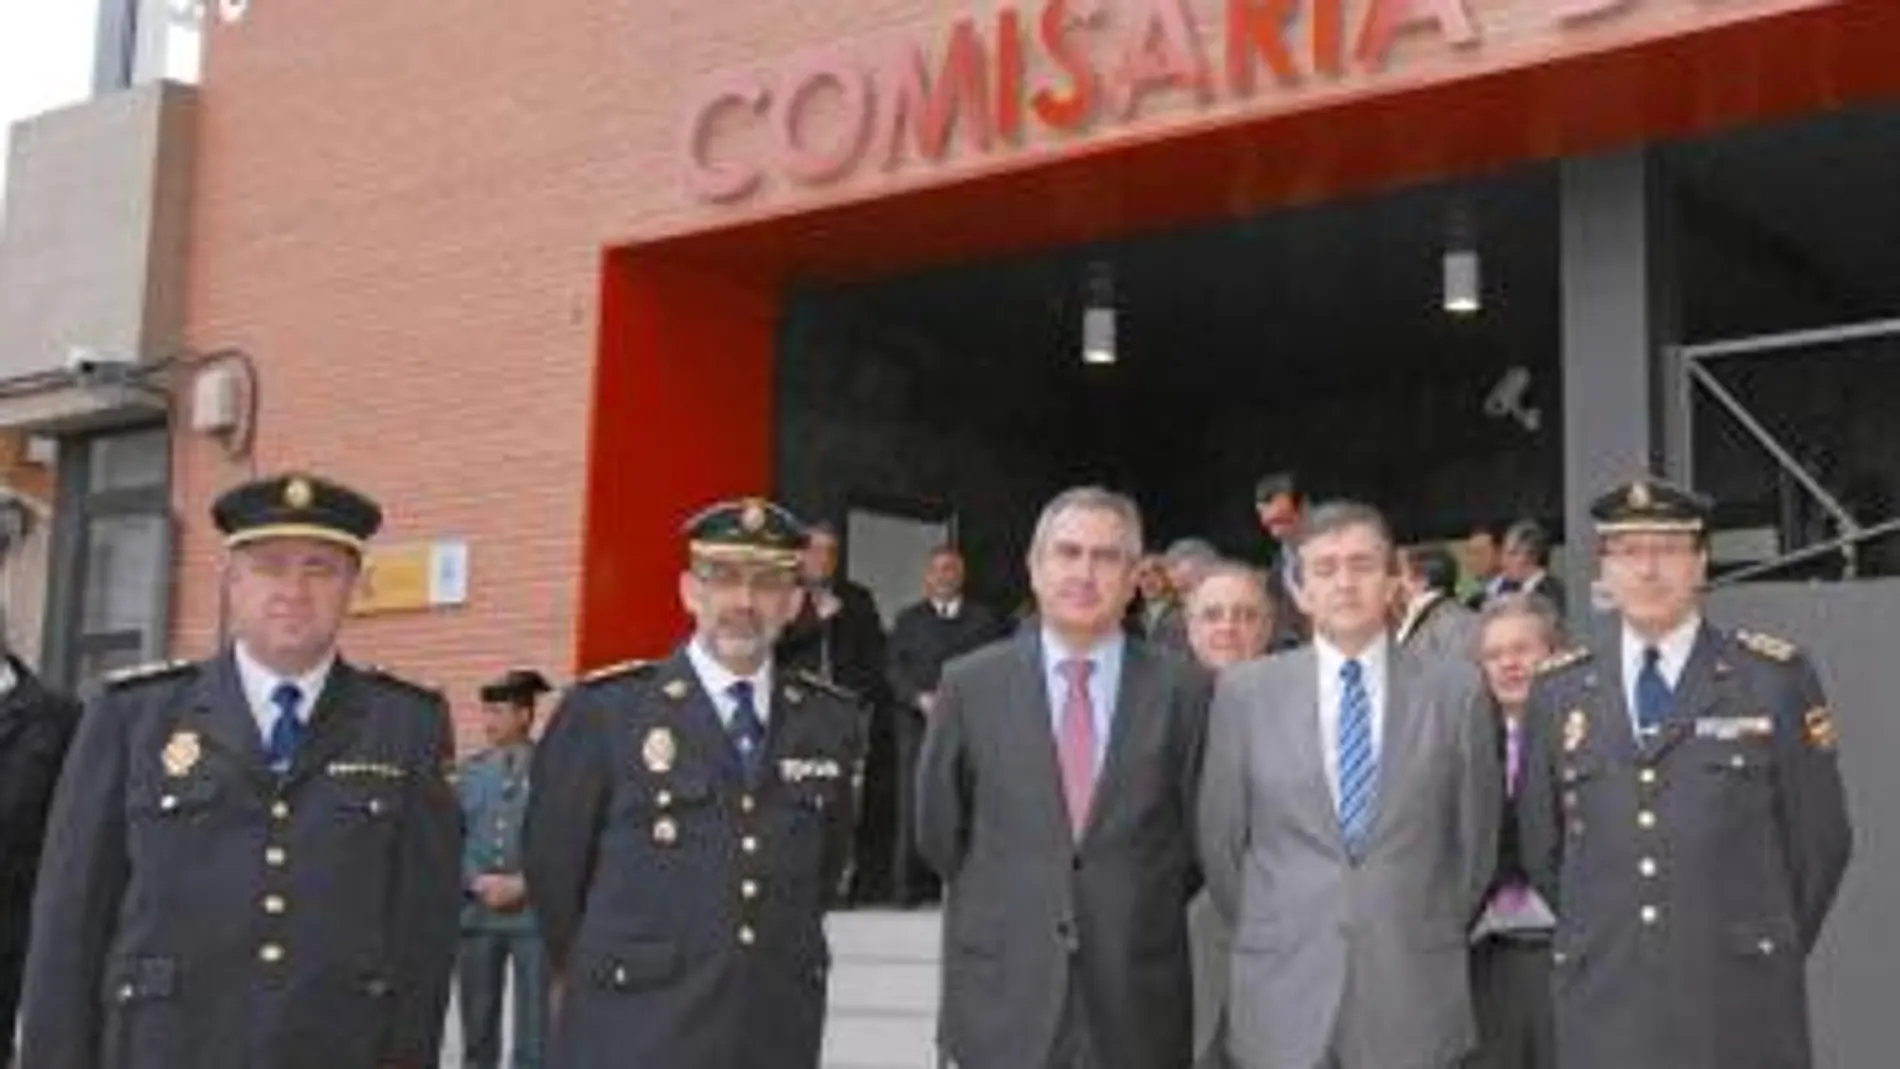 Francisco Jiménez, Rafael González Tovar, Francisco Javier Velázquez y Carlos Llorente, en la inauguración de la nueva Comisaría